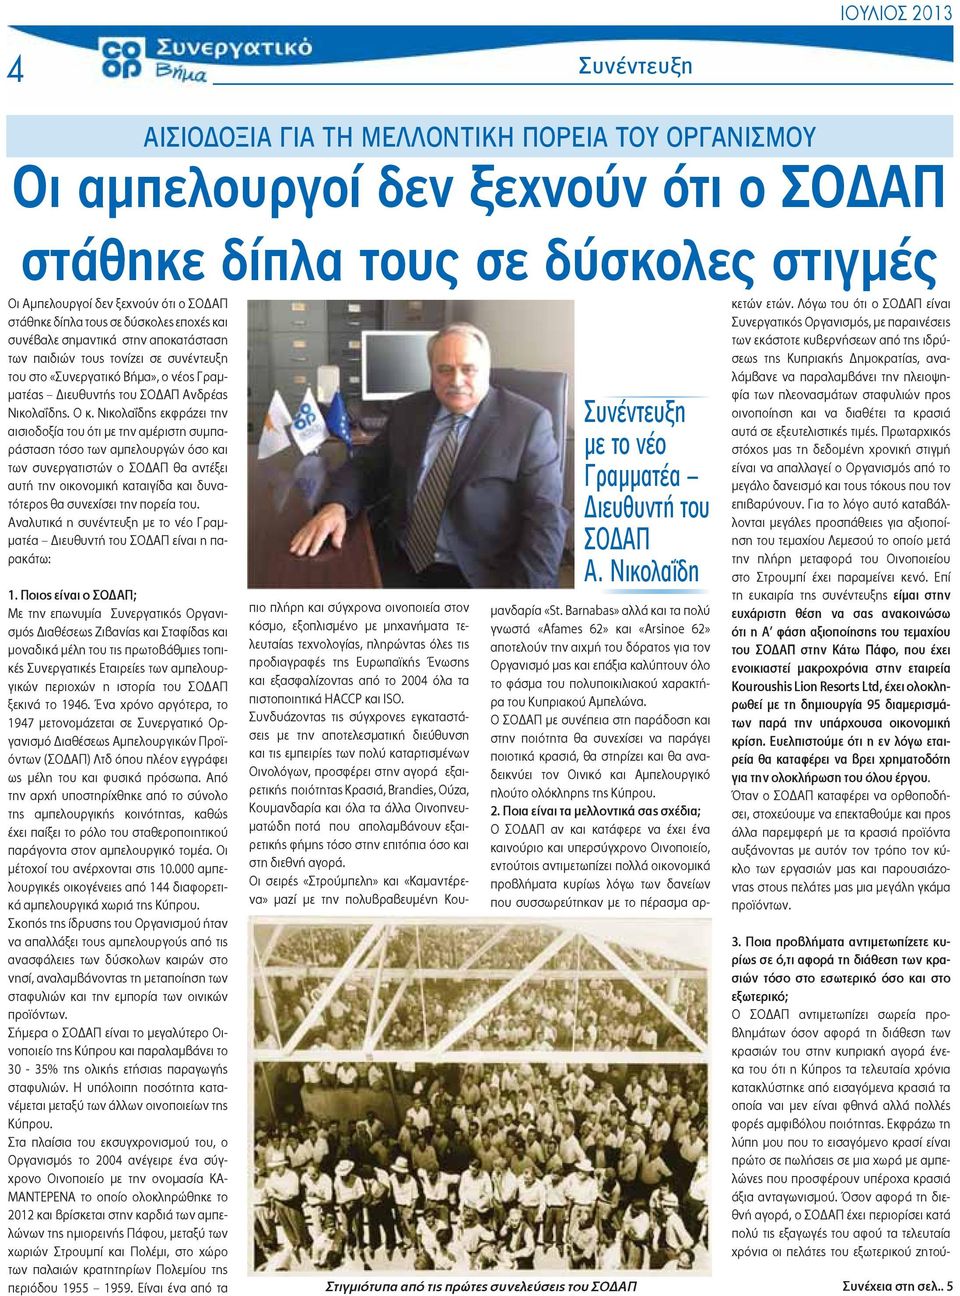 Νικολαΐδης εκφράζει την αισιοδοξία του ότι με την αμέριστη συμπαράσταση τόσο των αμπελουργών όσο και των συνεργατιστών ο ΣΟ ΑΠ θα αντέξει αυτή την οικονομική καταιγίδα και δυνατότερος θα συνεχίσει